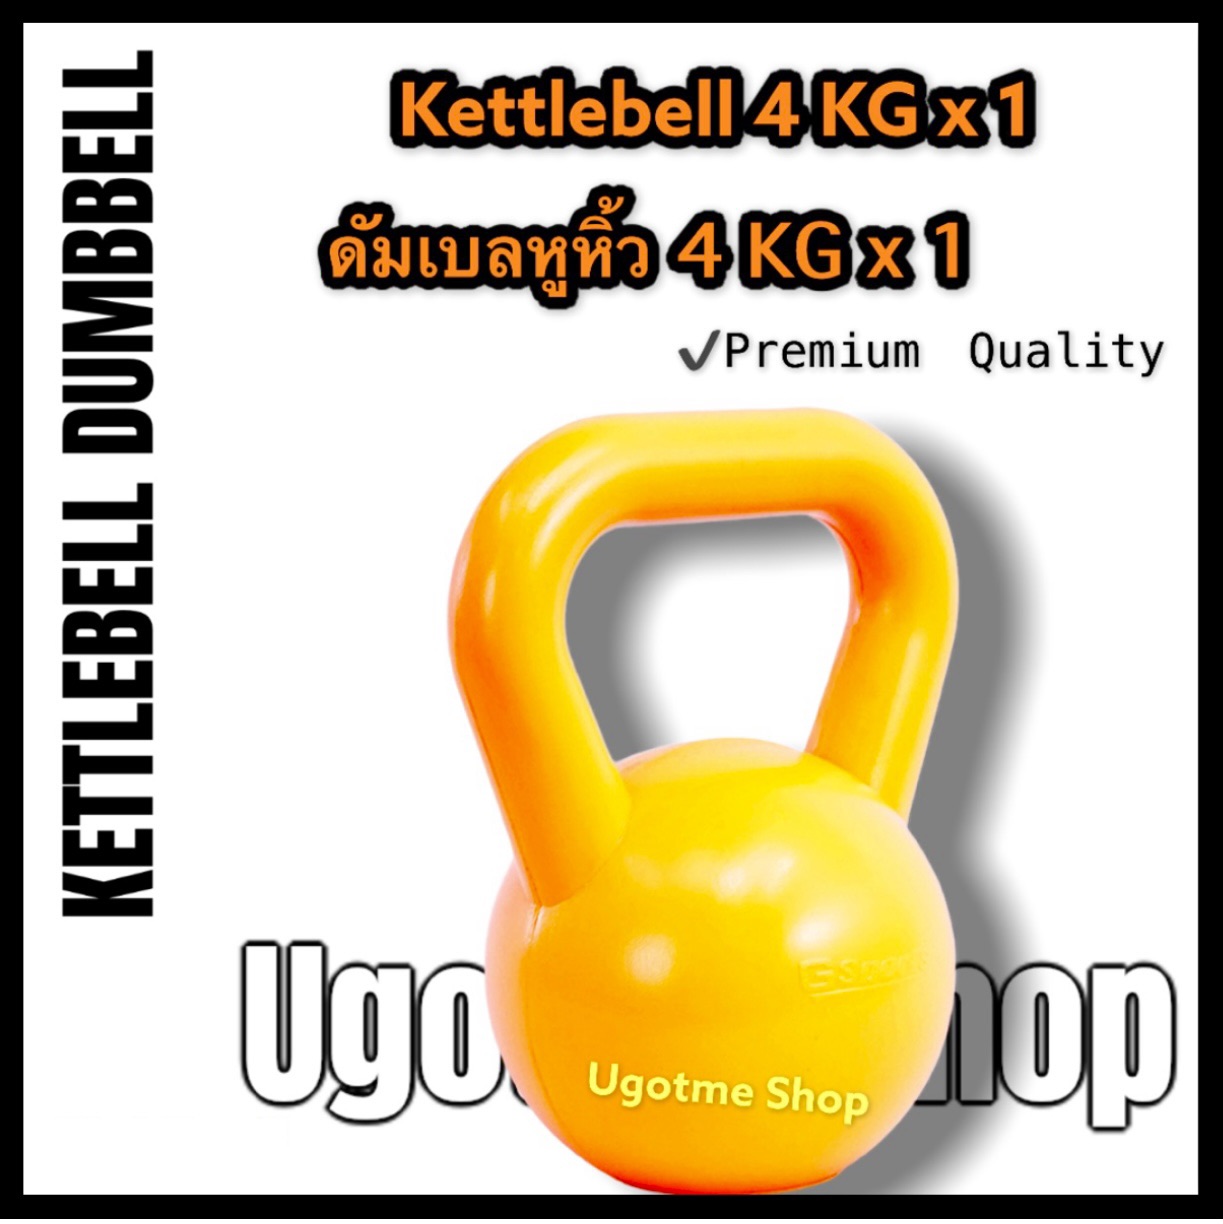 Gsports Kettlebell น้ำหนัก 4 KG เคตเทิล ดัมเบล ดัมเบลหูหิ้ว 4 กก. (1 ชิ้น)